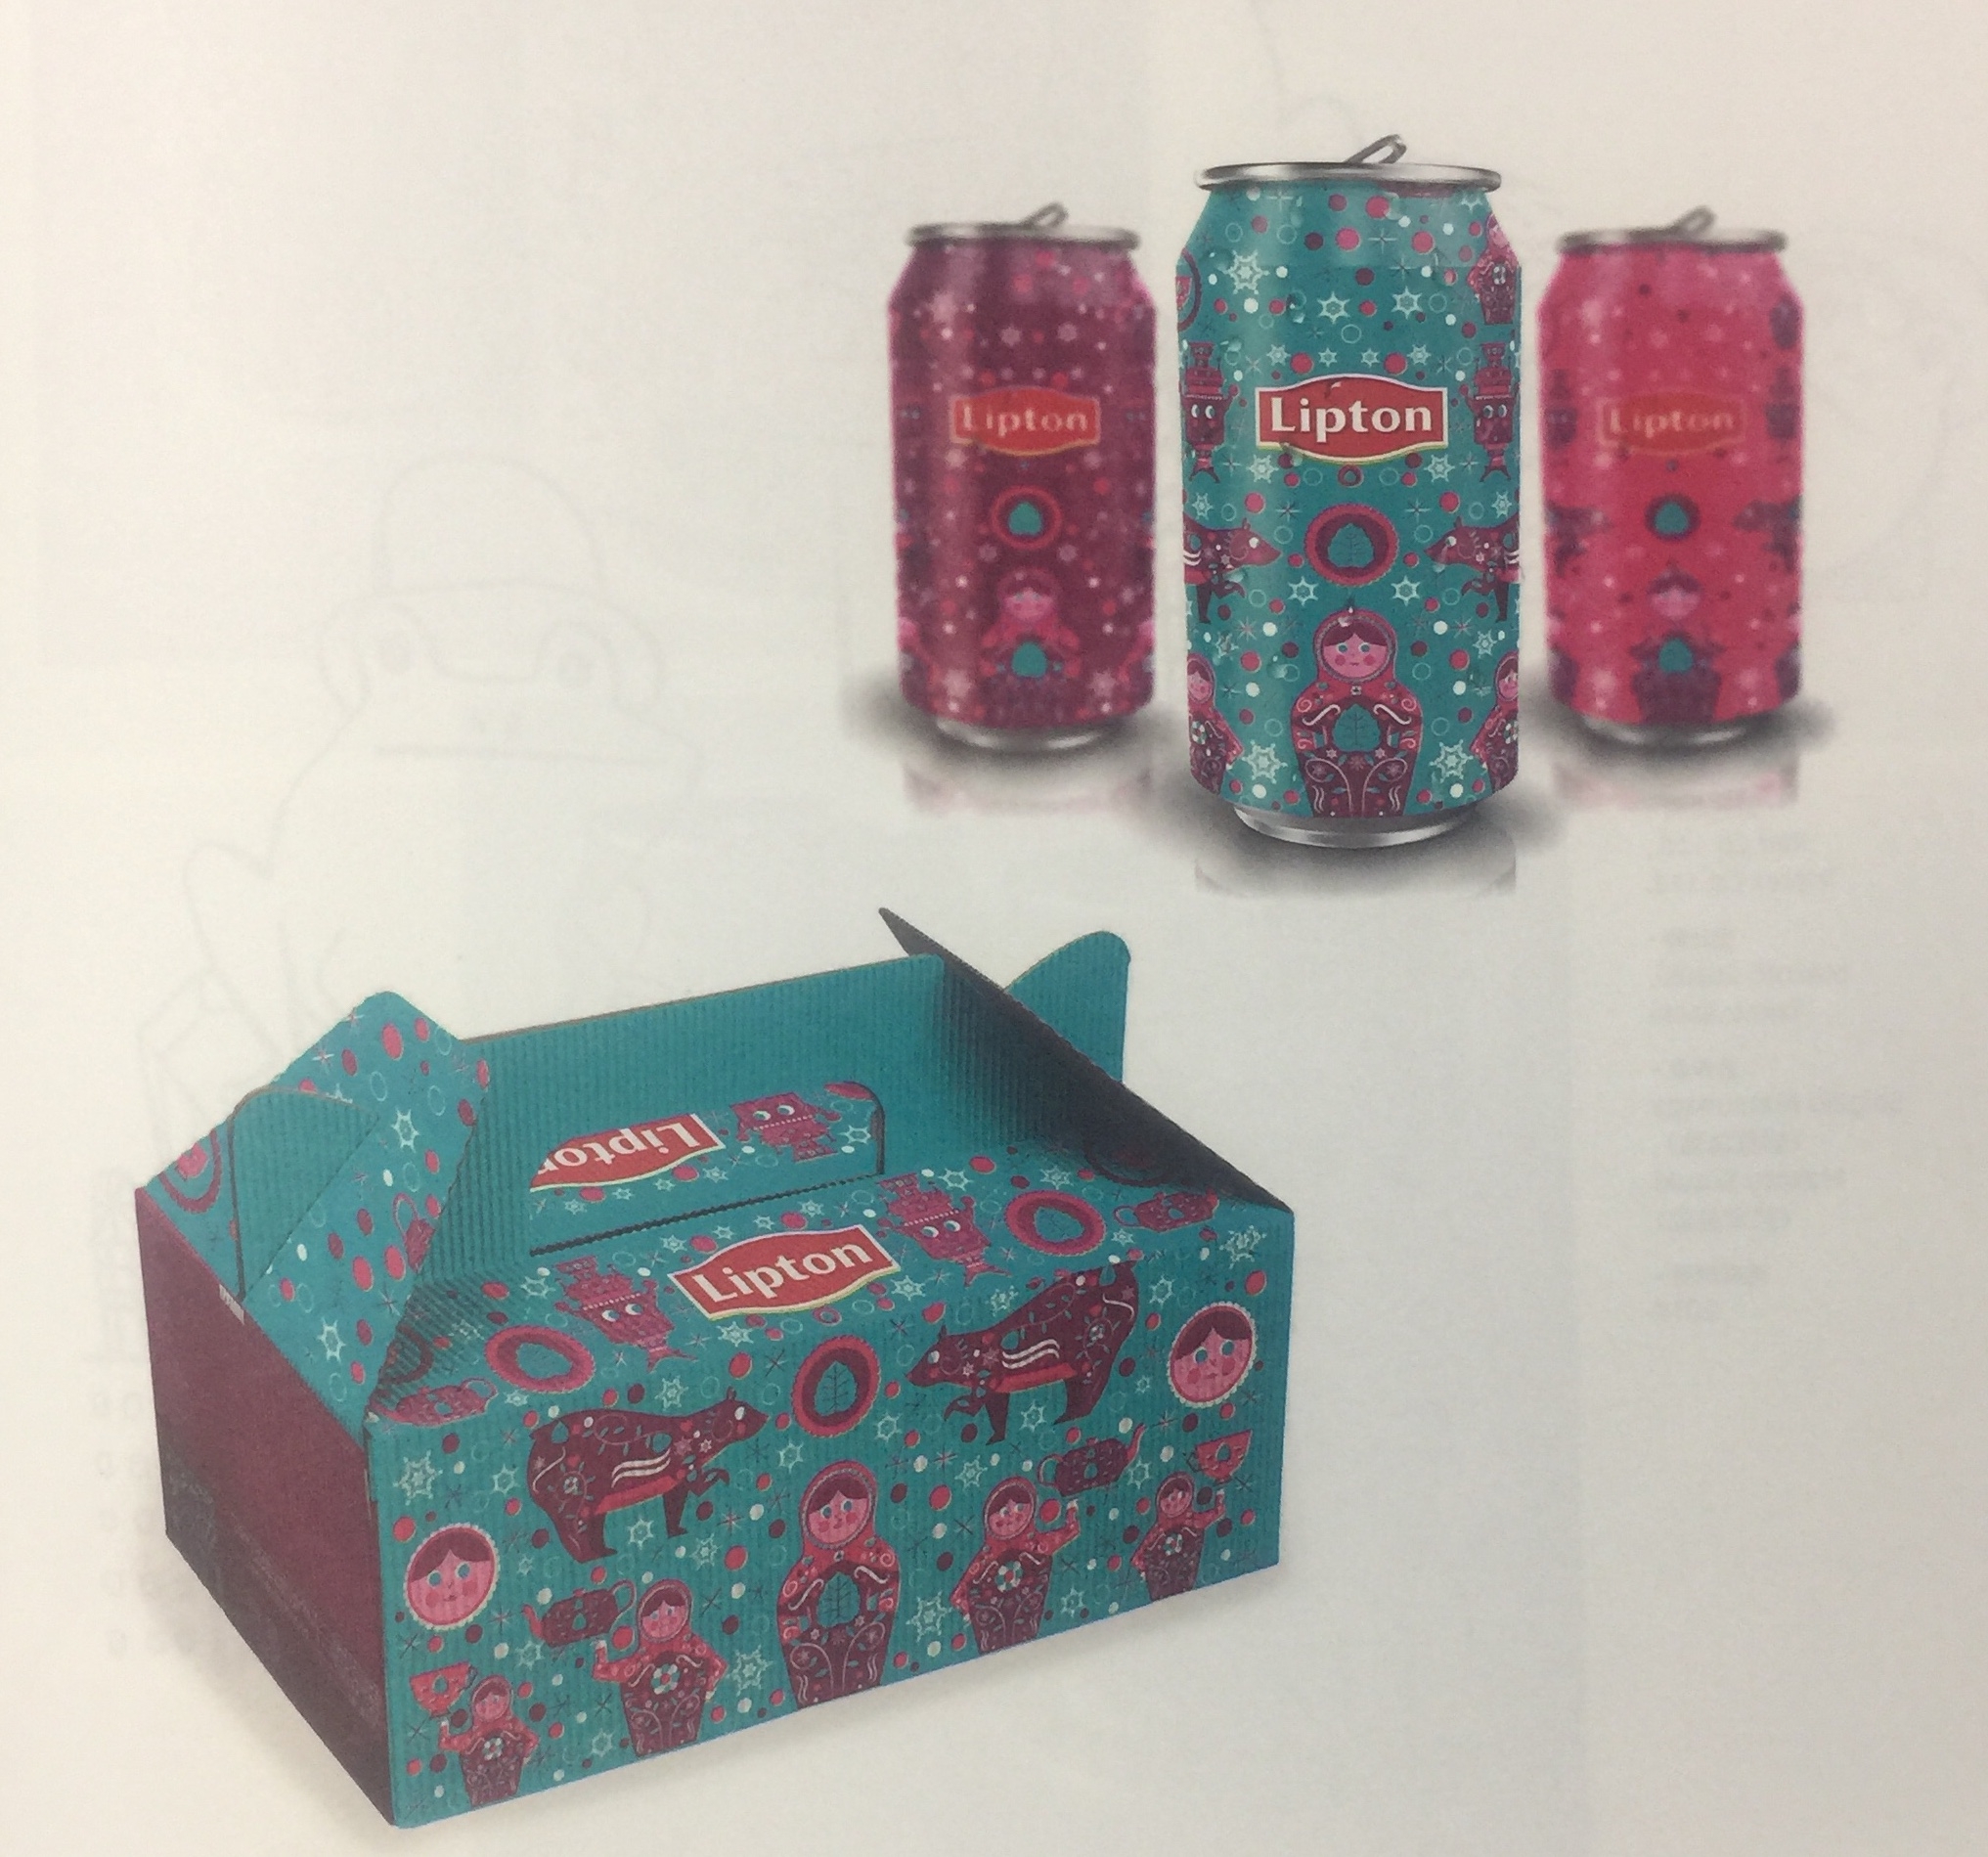 新年版的立顿冰红茶饮料包装设计